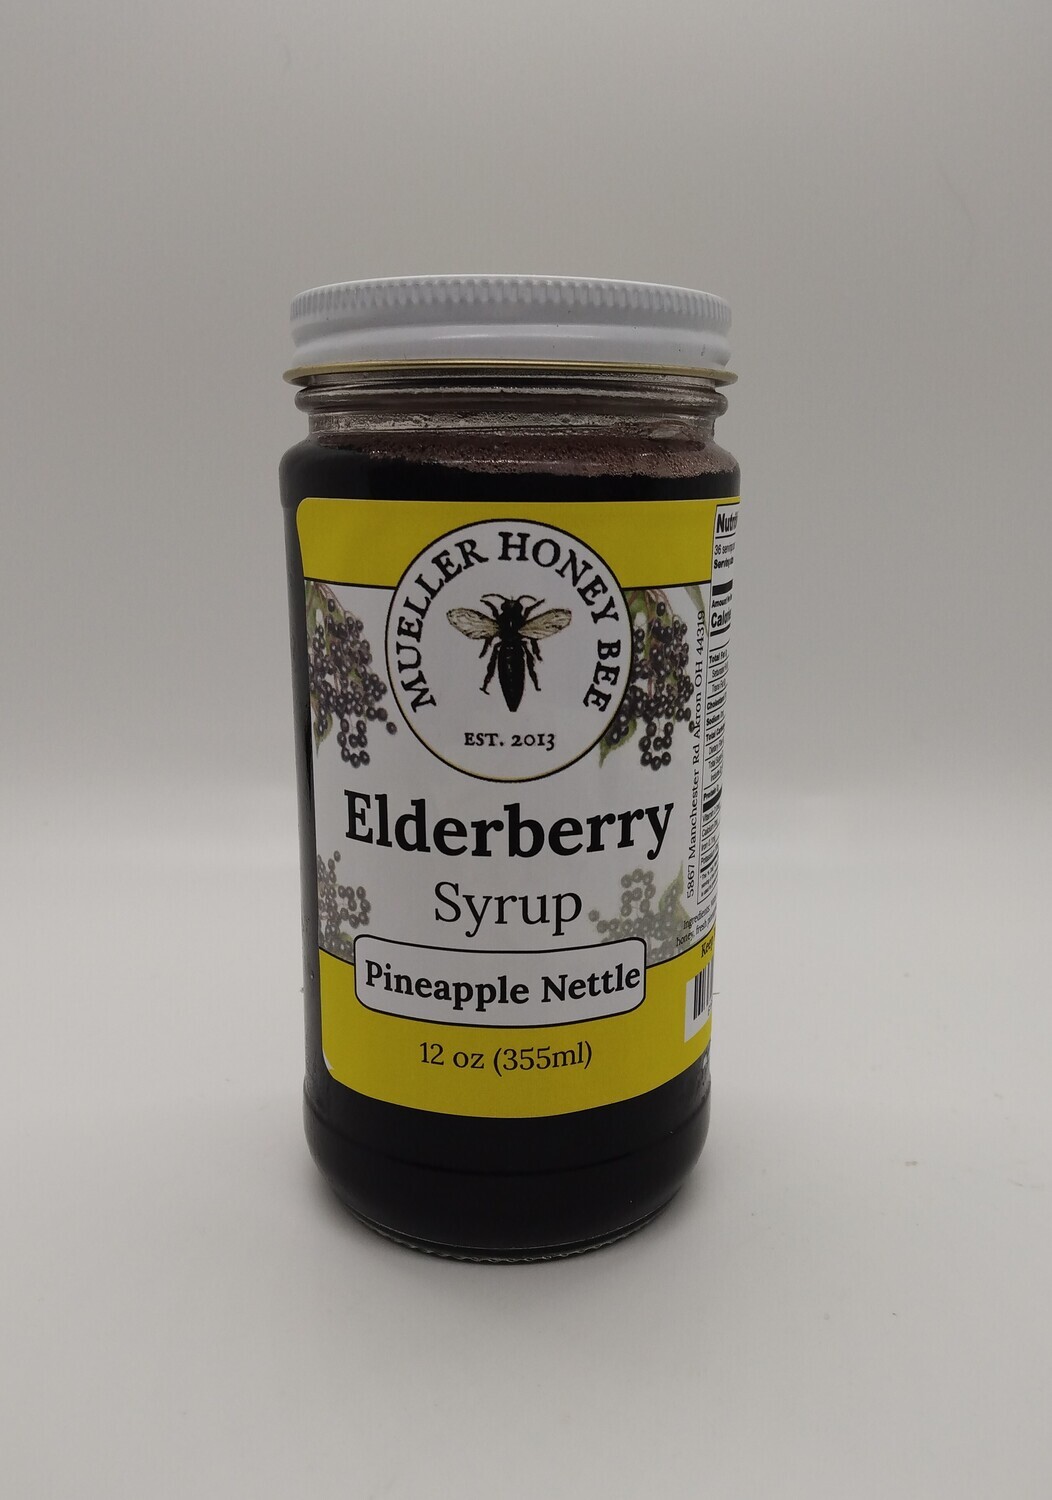 2 pack - 12 oz Pineapple Nettle Elderberry Syrup